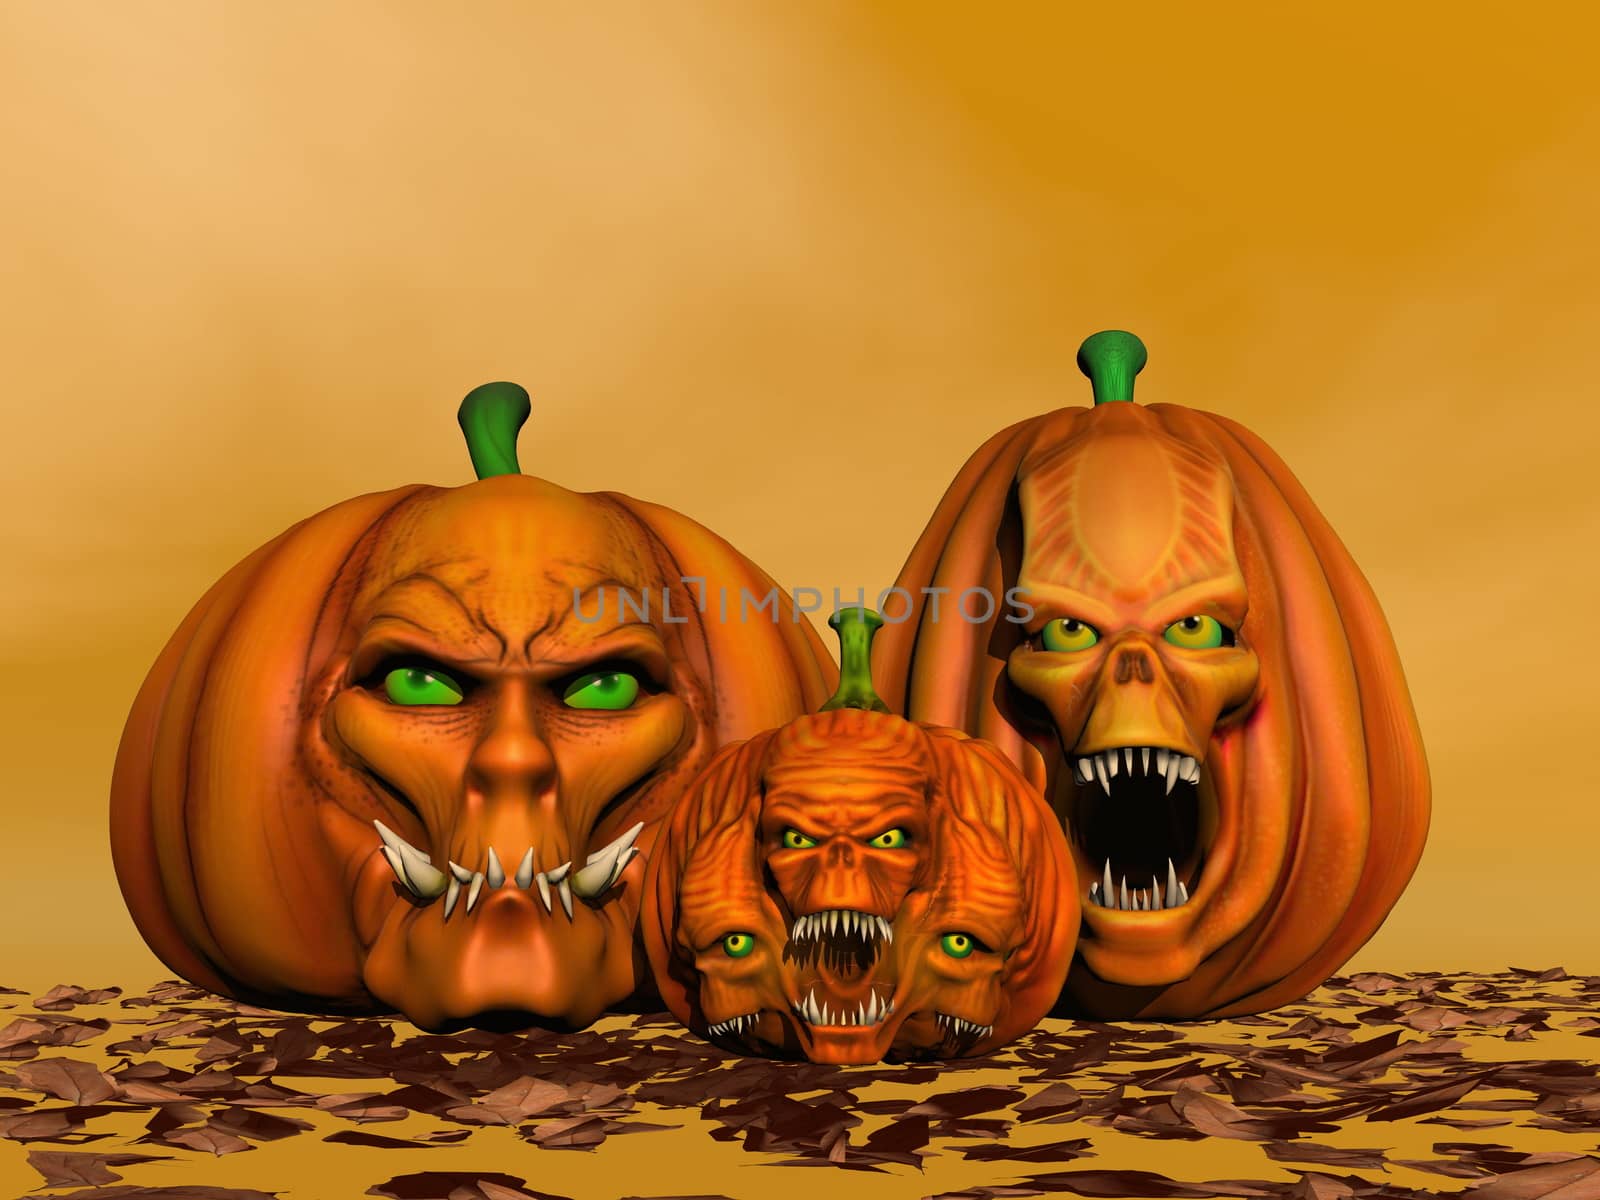 Halloween pumpkins - 3D render by Elenaphotos21